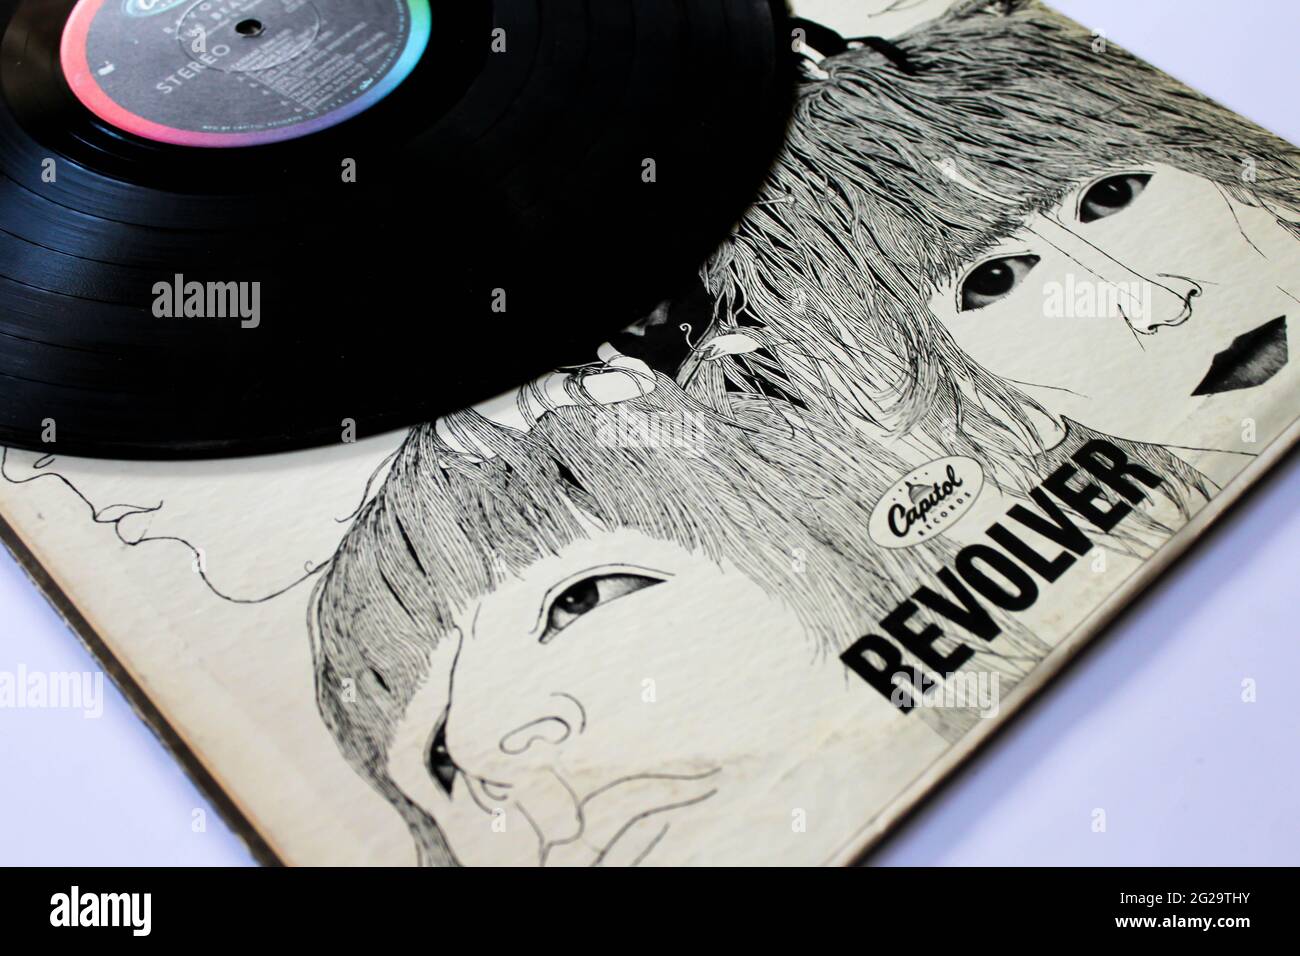 Le groupe de rock anglais The Beatles Music album on vinyle record LP disc. Intitulé: Couverture de l'album Revolver Banque D'Images